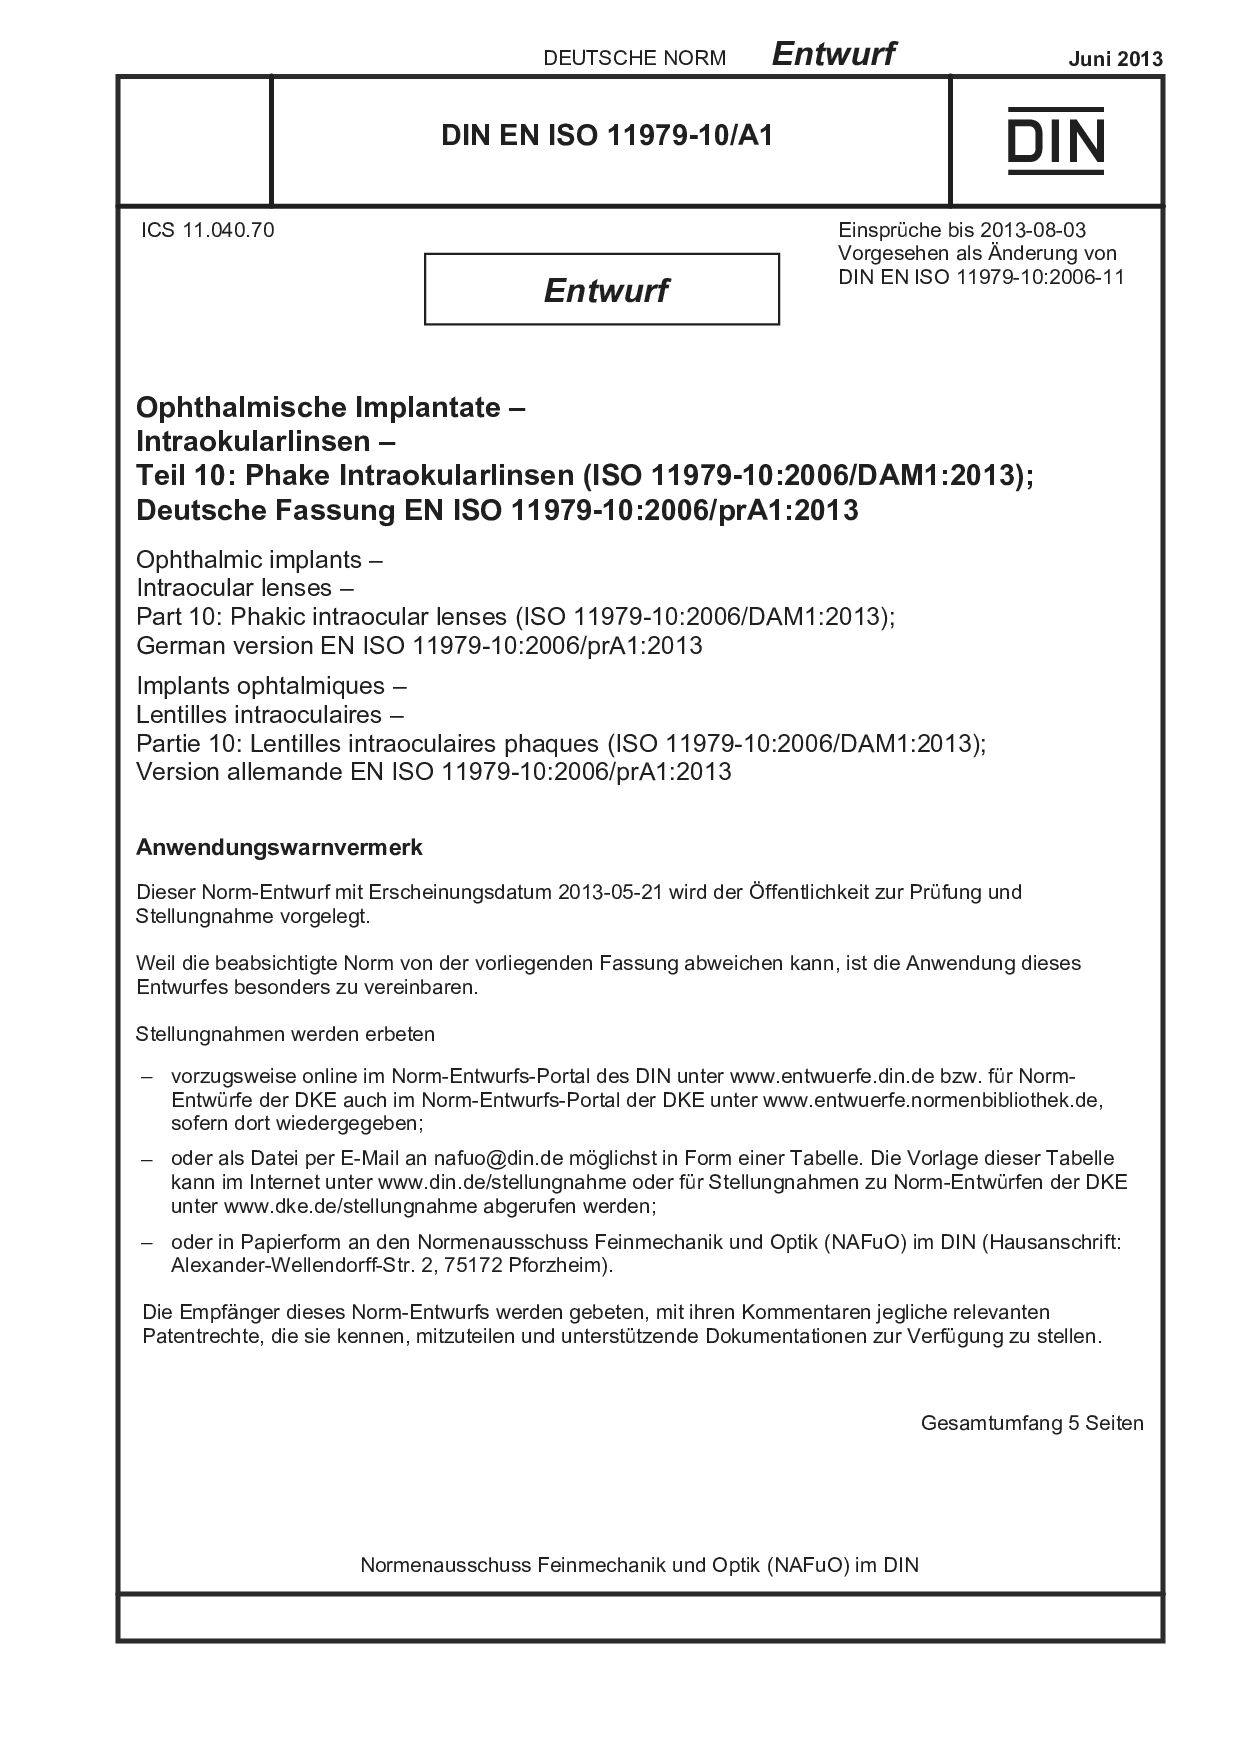 DIN EN ISO 11979-10 A1 E:2013-06